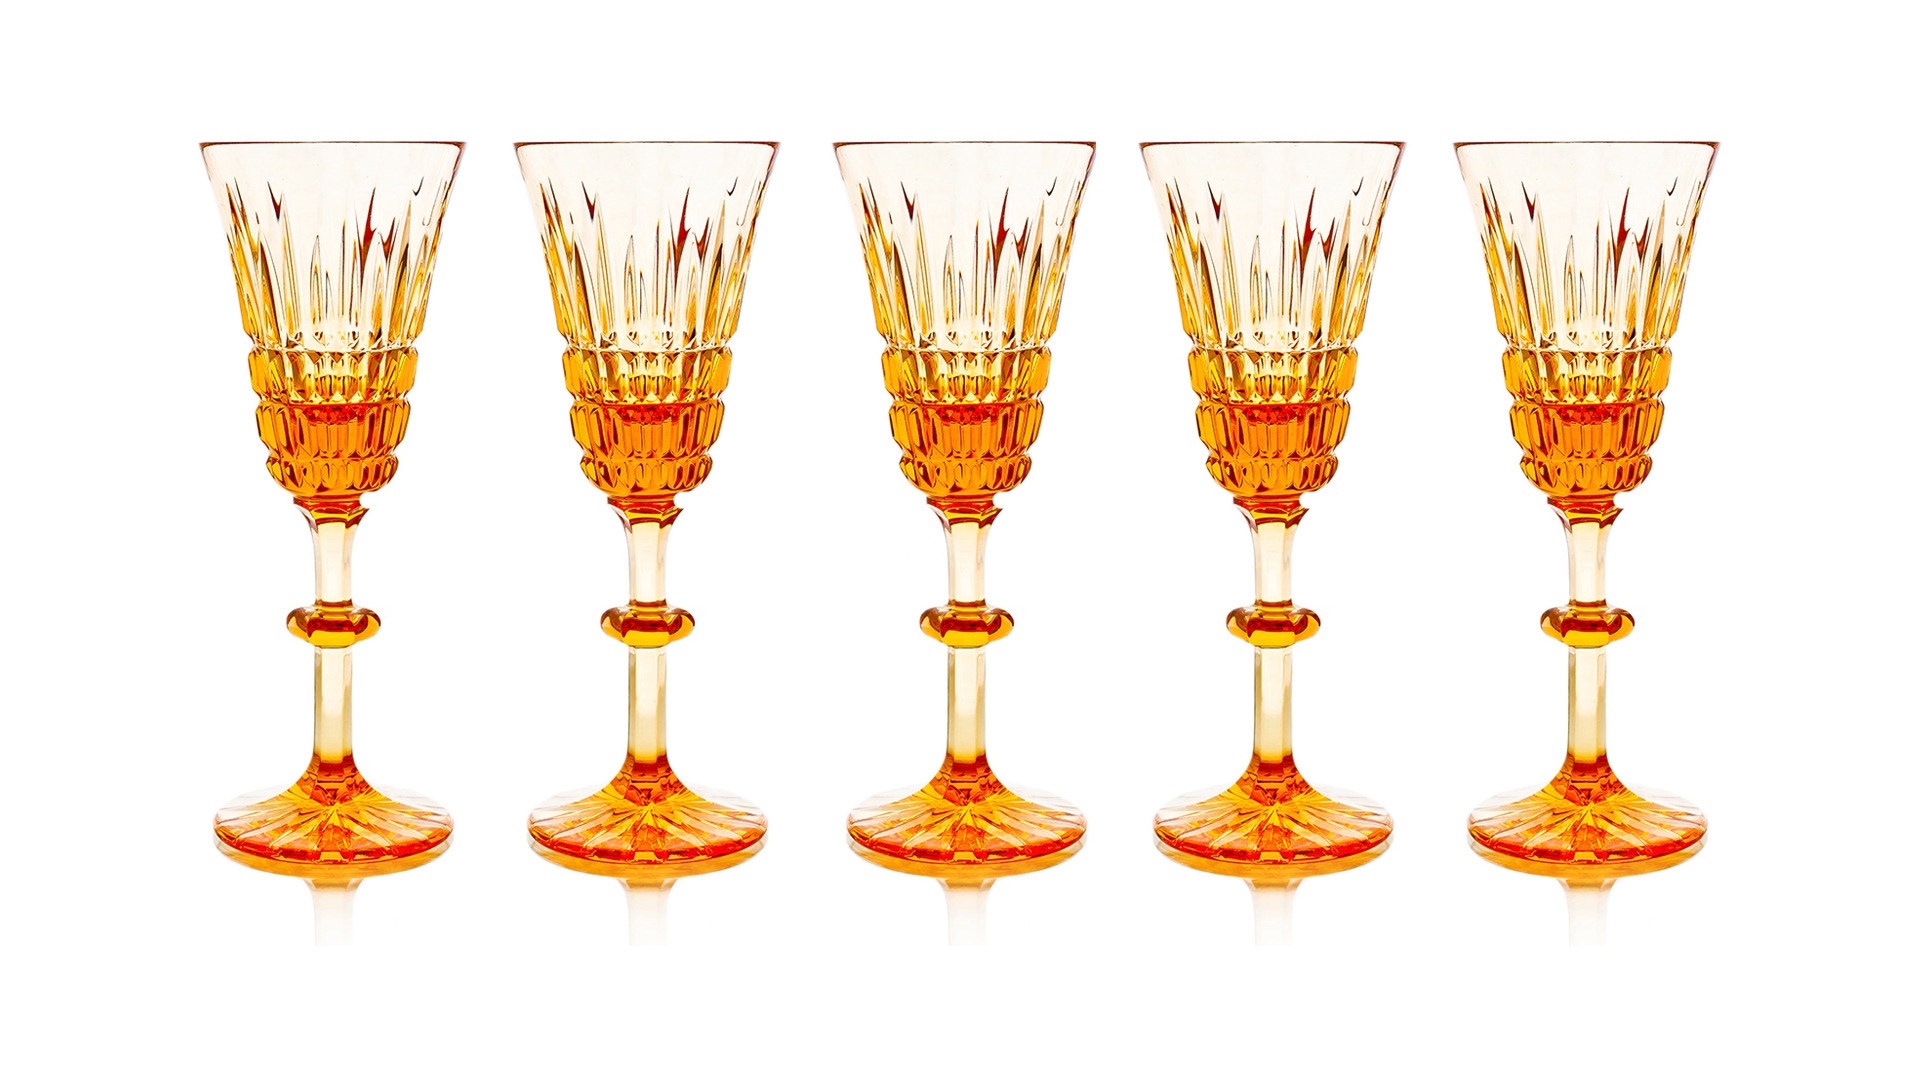 Набор бокалов для шампанского ГХЗ Медовый спас 225 мл, 5 шт, хрусталь, янтарный-sale